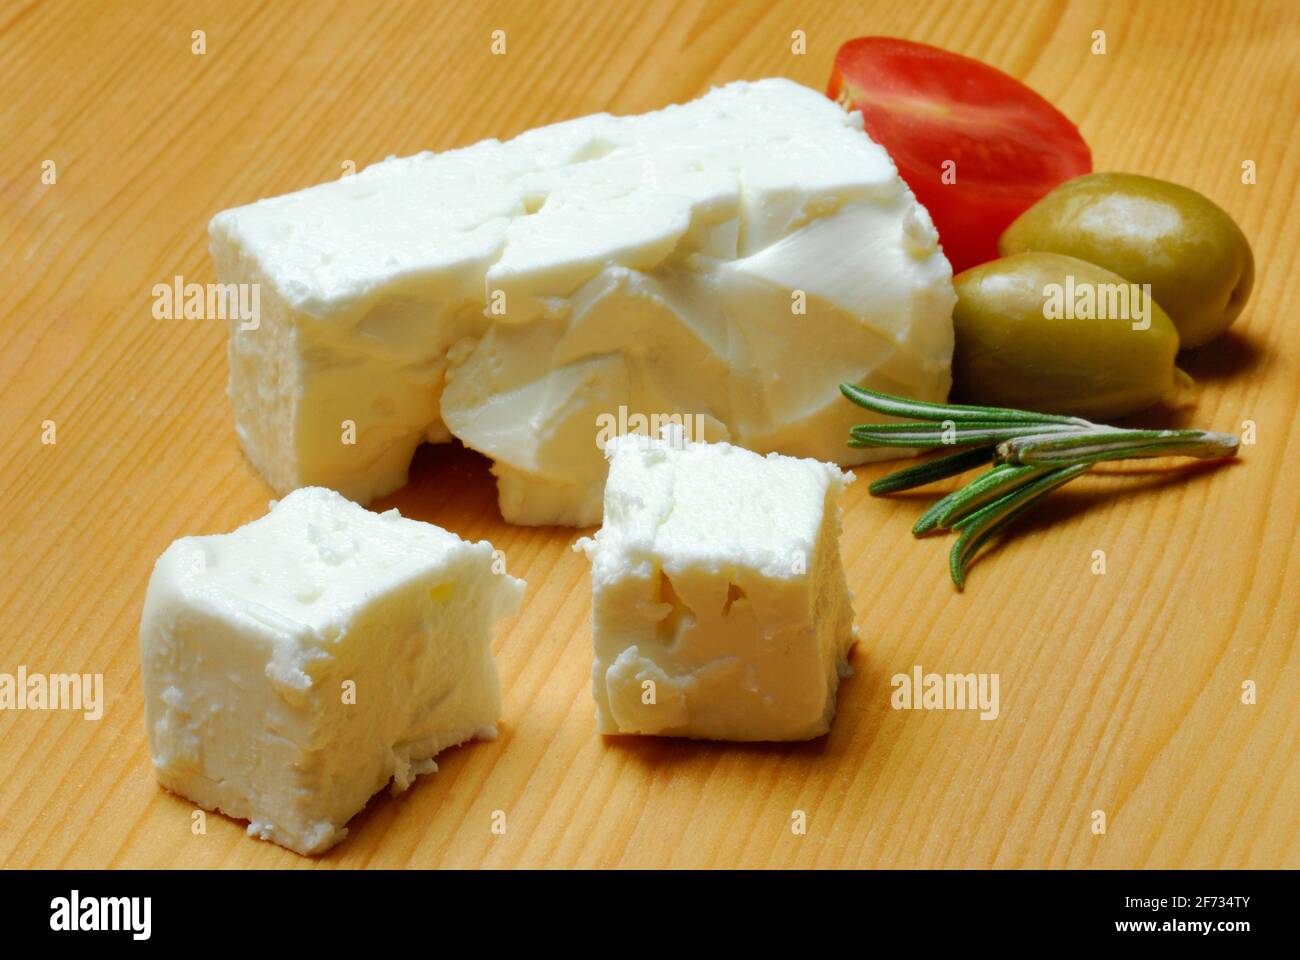 Feta, feta cheese, sheep cheese, brine cheese, sheep cheese, feta cheese, brine cheese Stock Photo